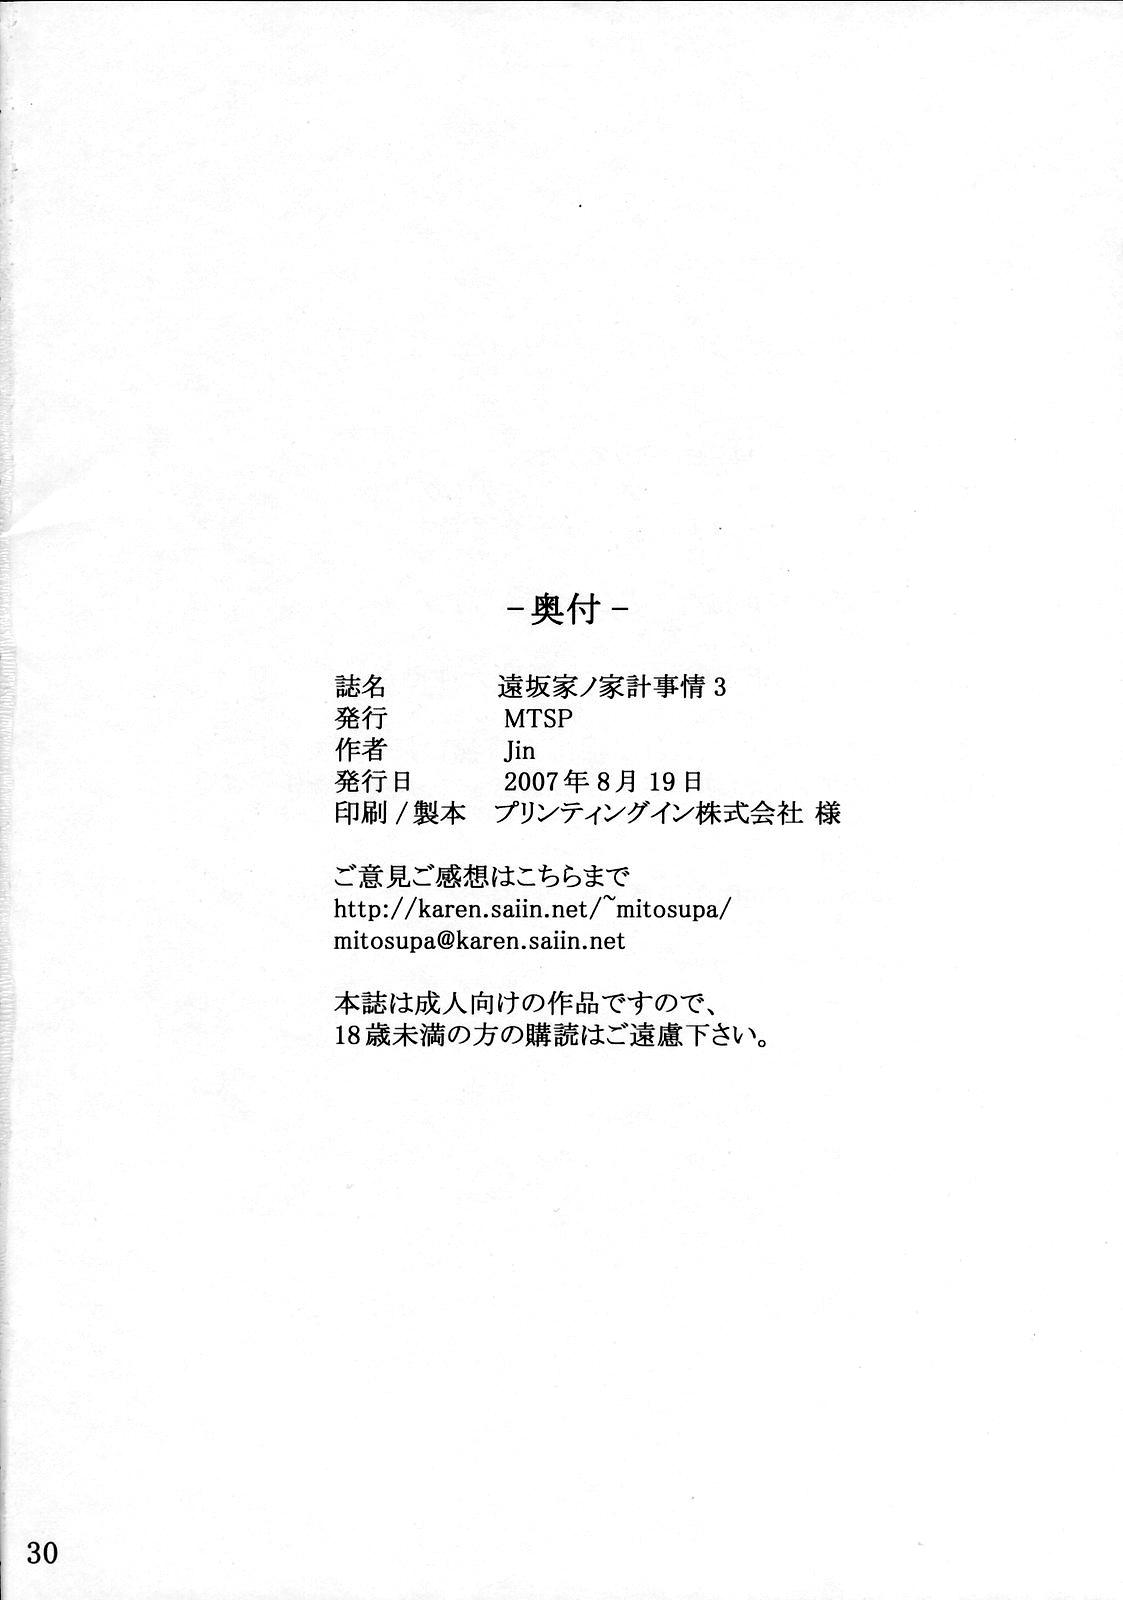 Naija Tohsaka-ke no Kakei Jijou 3 - Fate stay night Spycam - Page 29